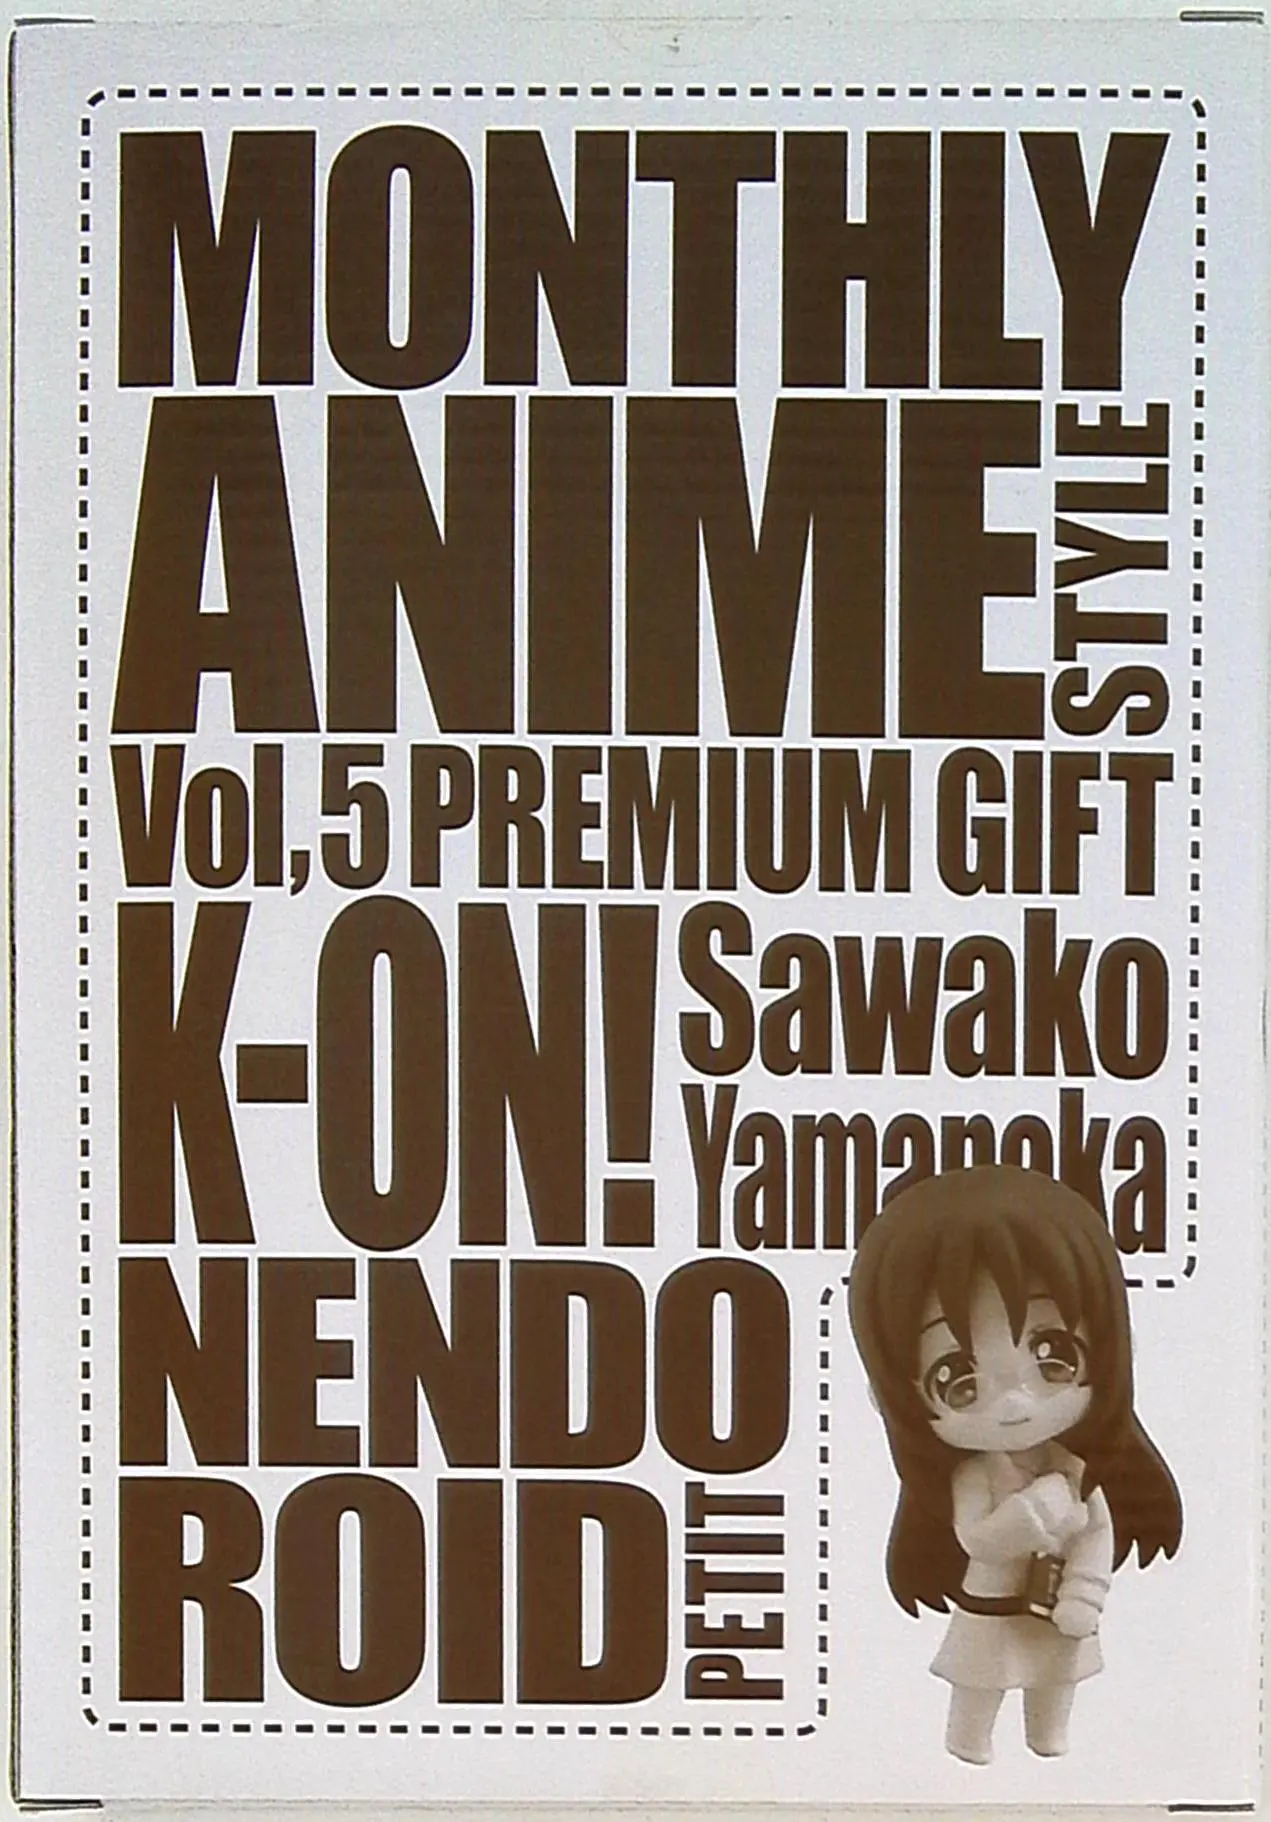 Nendoroid Petite - K-ON!